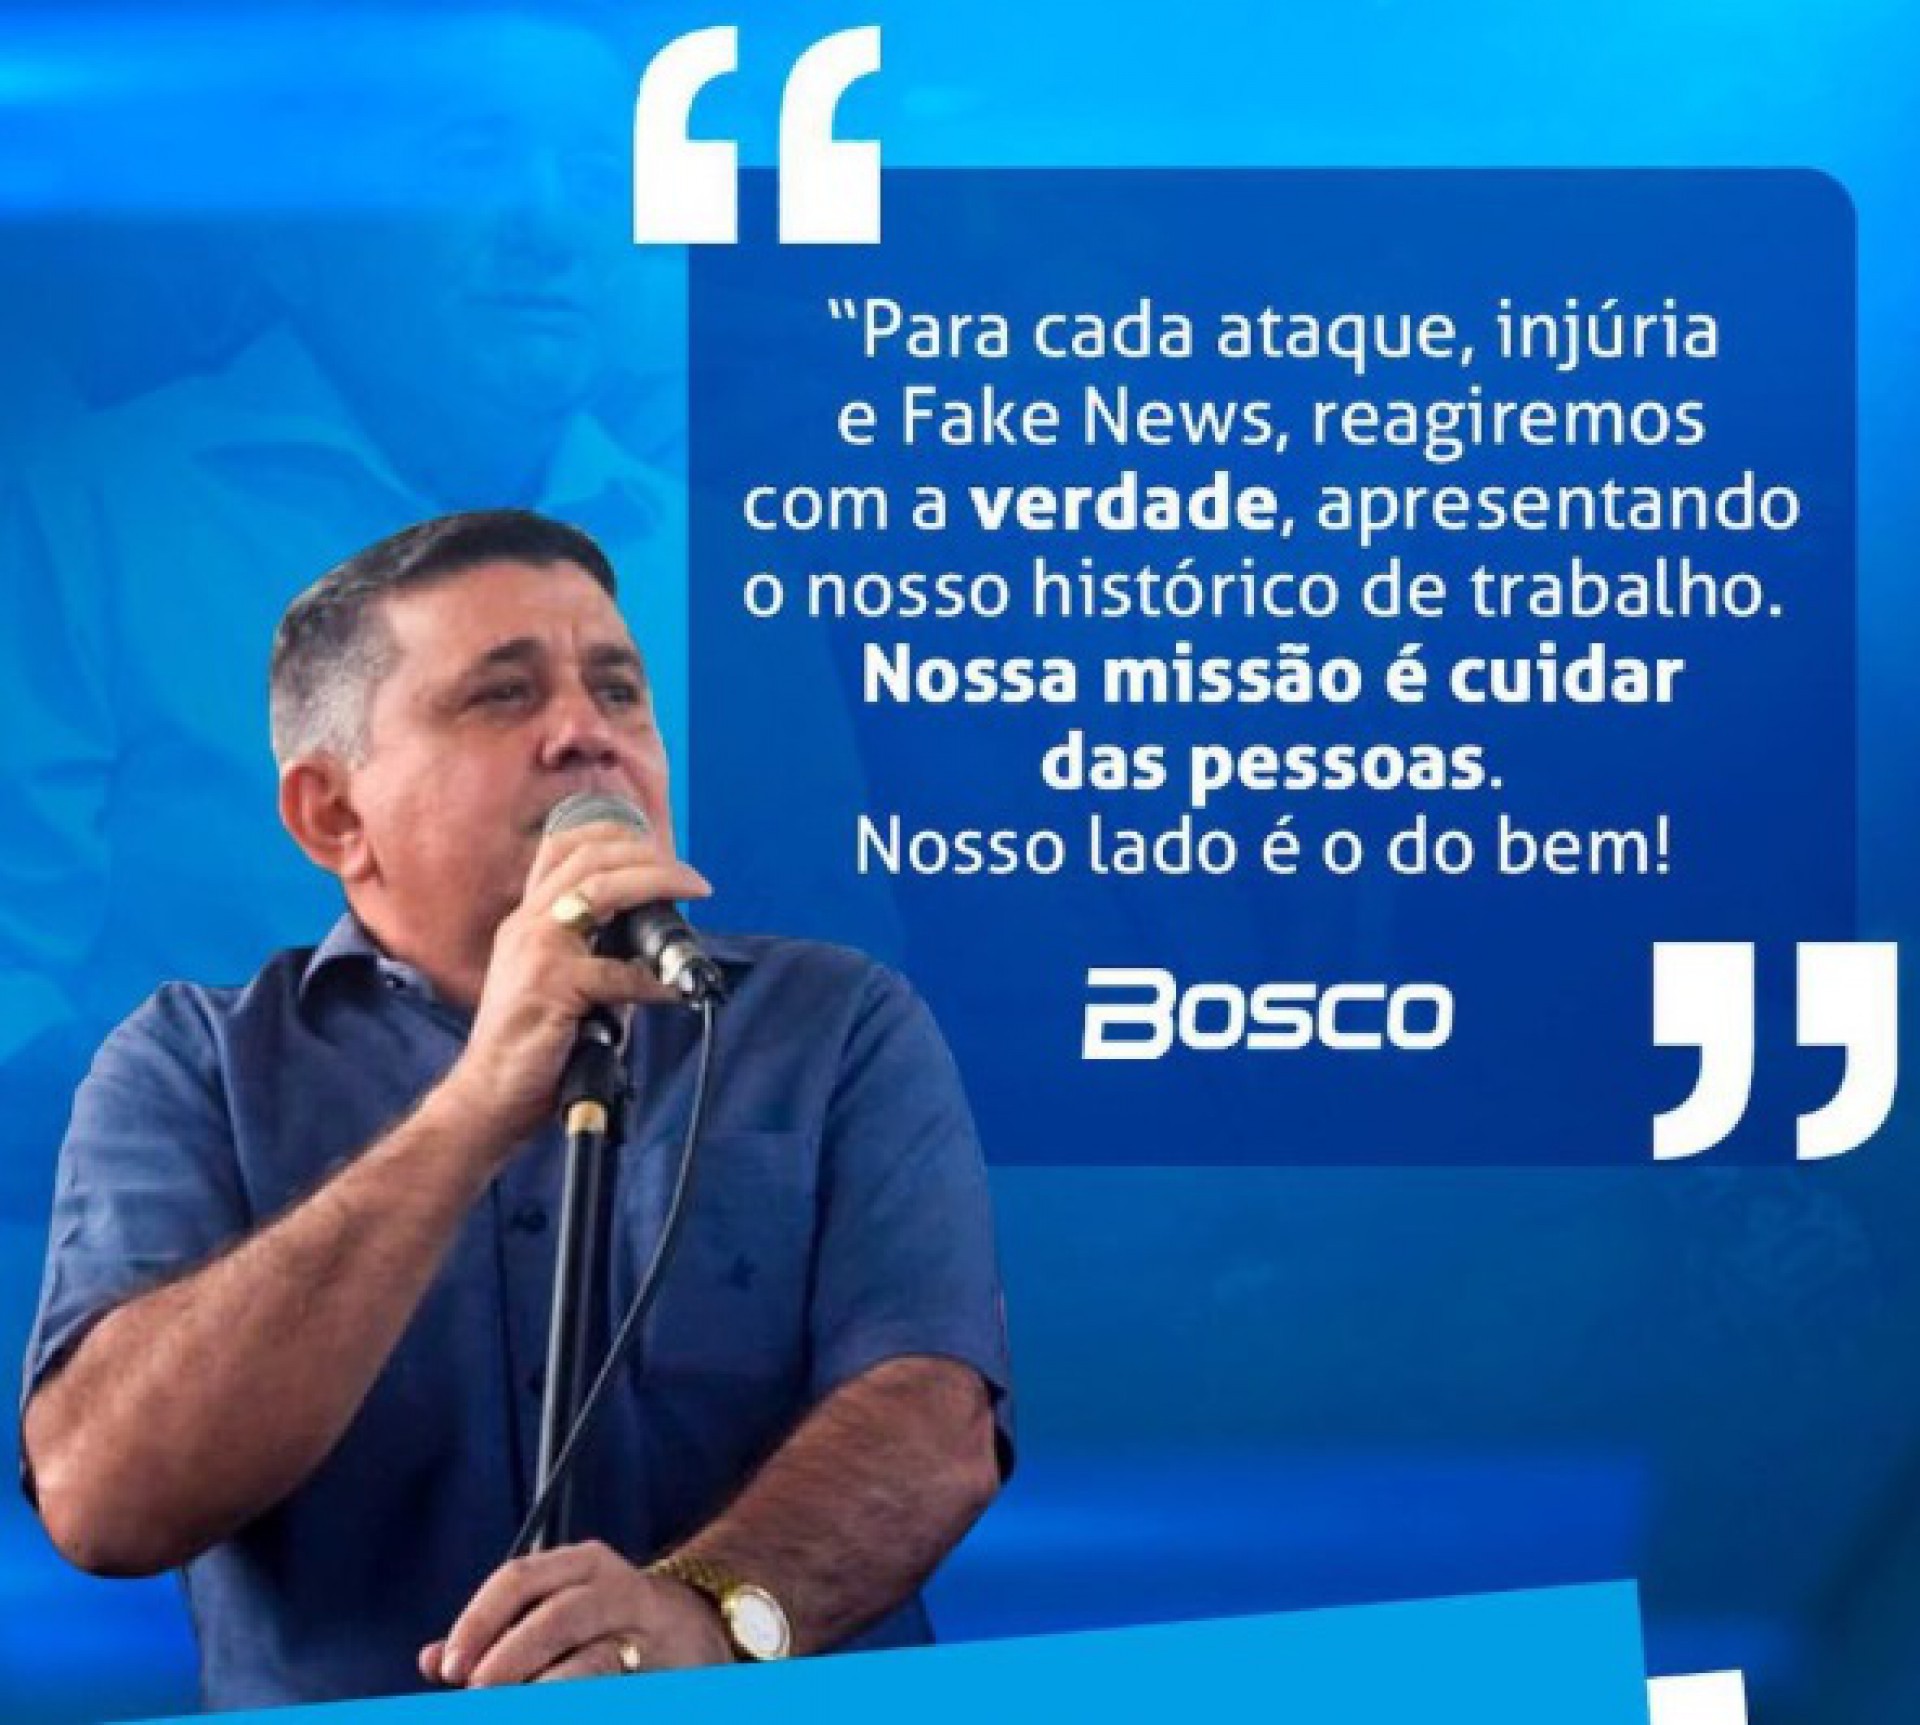 João Bosco é prefeito de Pentecoste (Foto: REPRODUÇÃO)